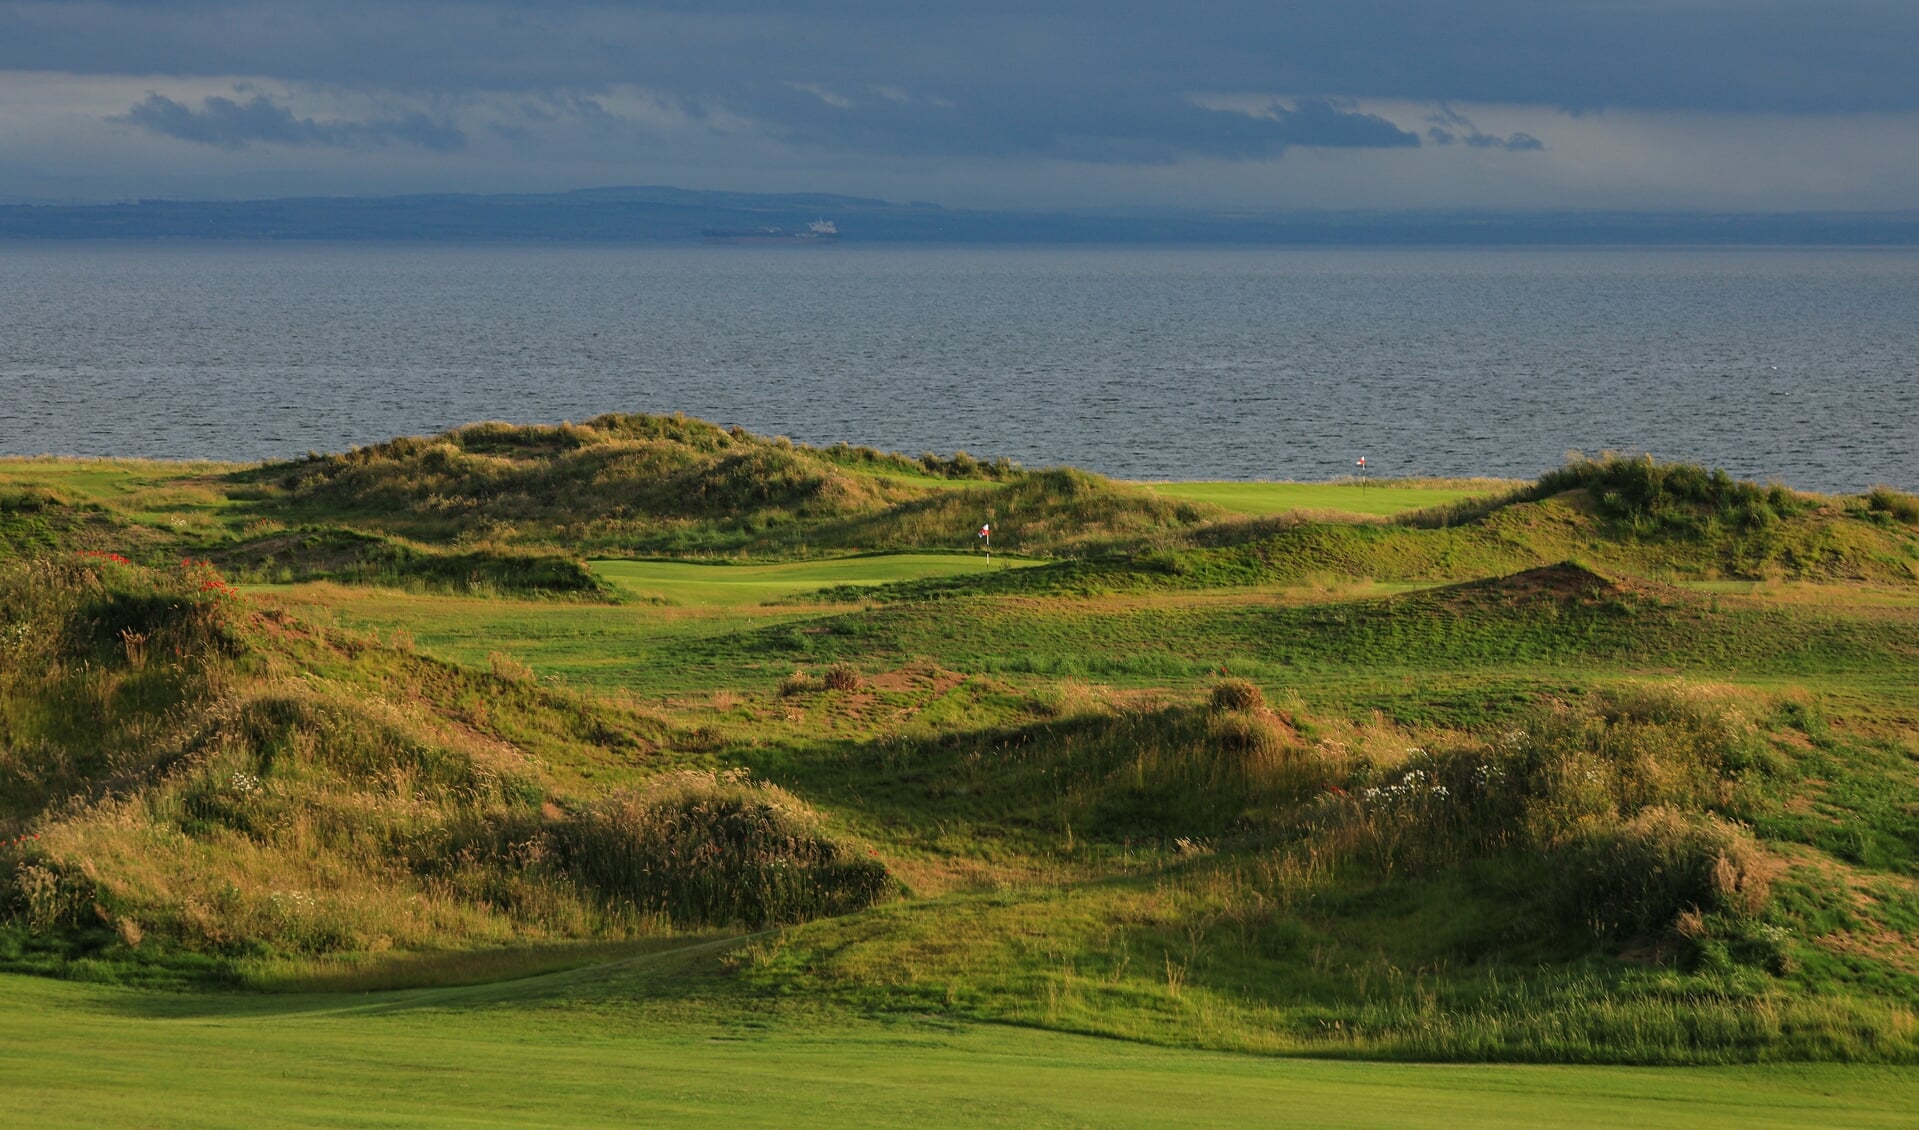 Een blik op de tiende en de eerste hole van Dumbarnie Golf Links, en je bent als golfer meteen verkocht. Schotland is een geweldige linkscourse rijker.